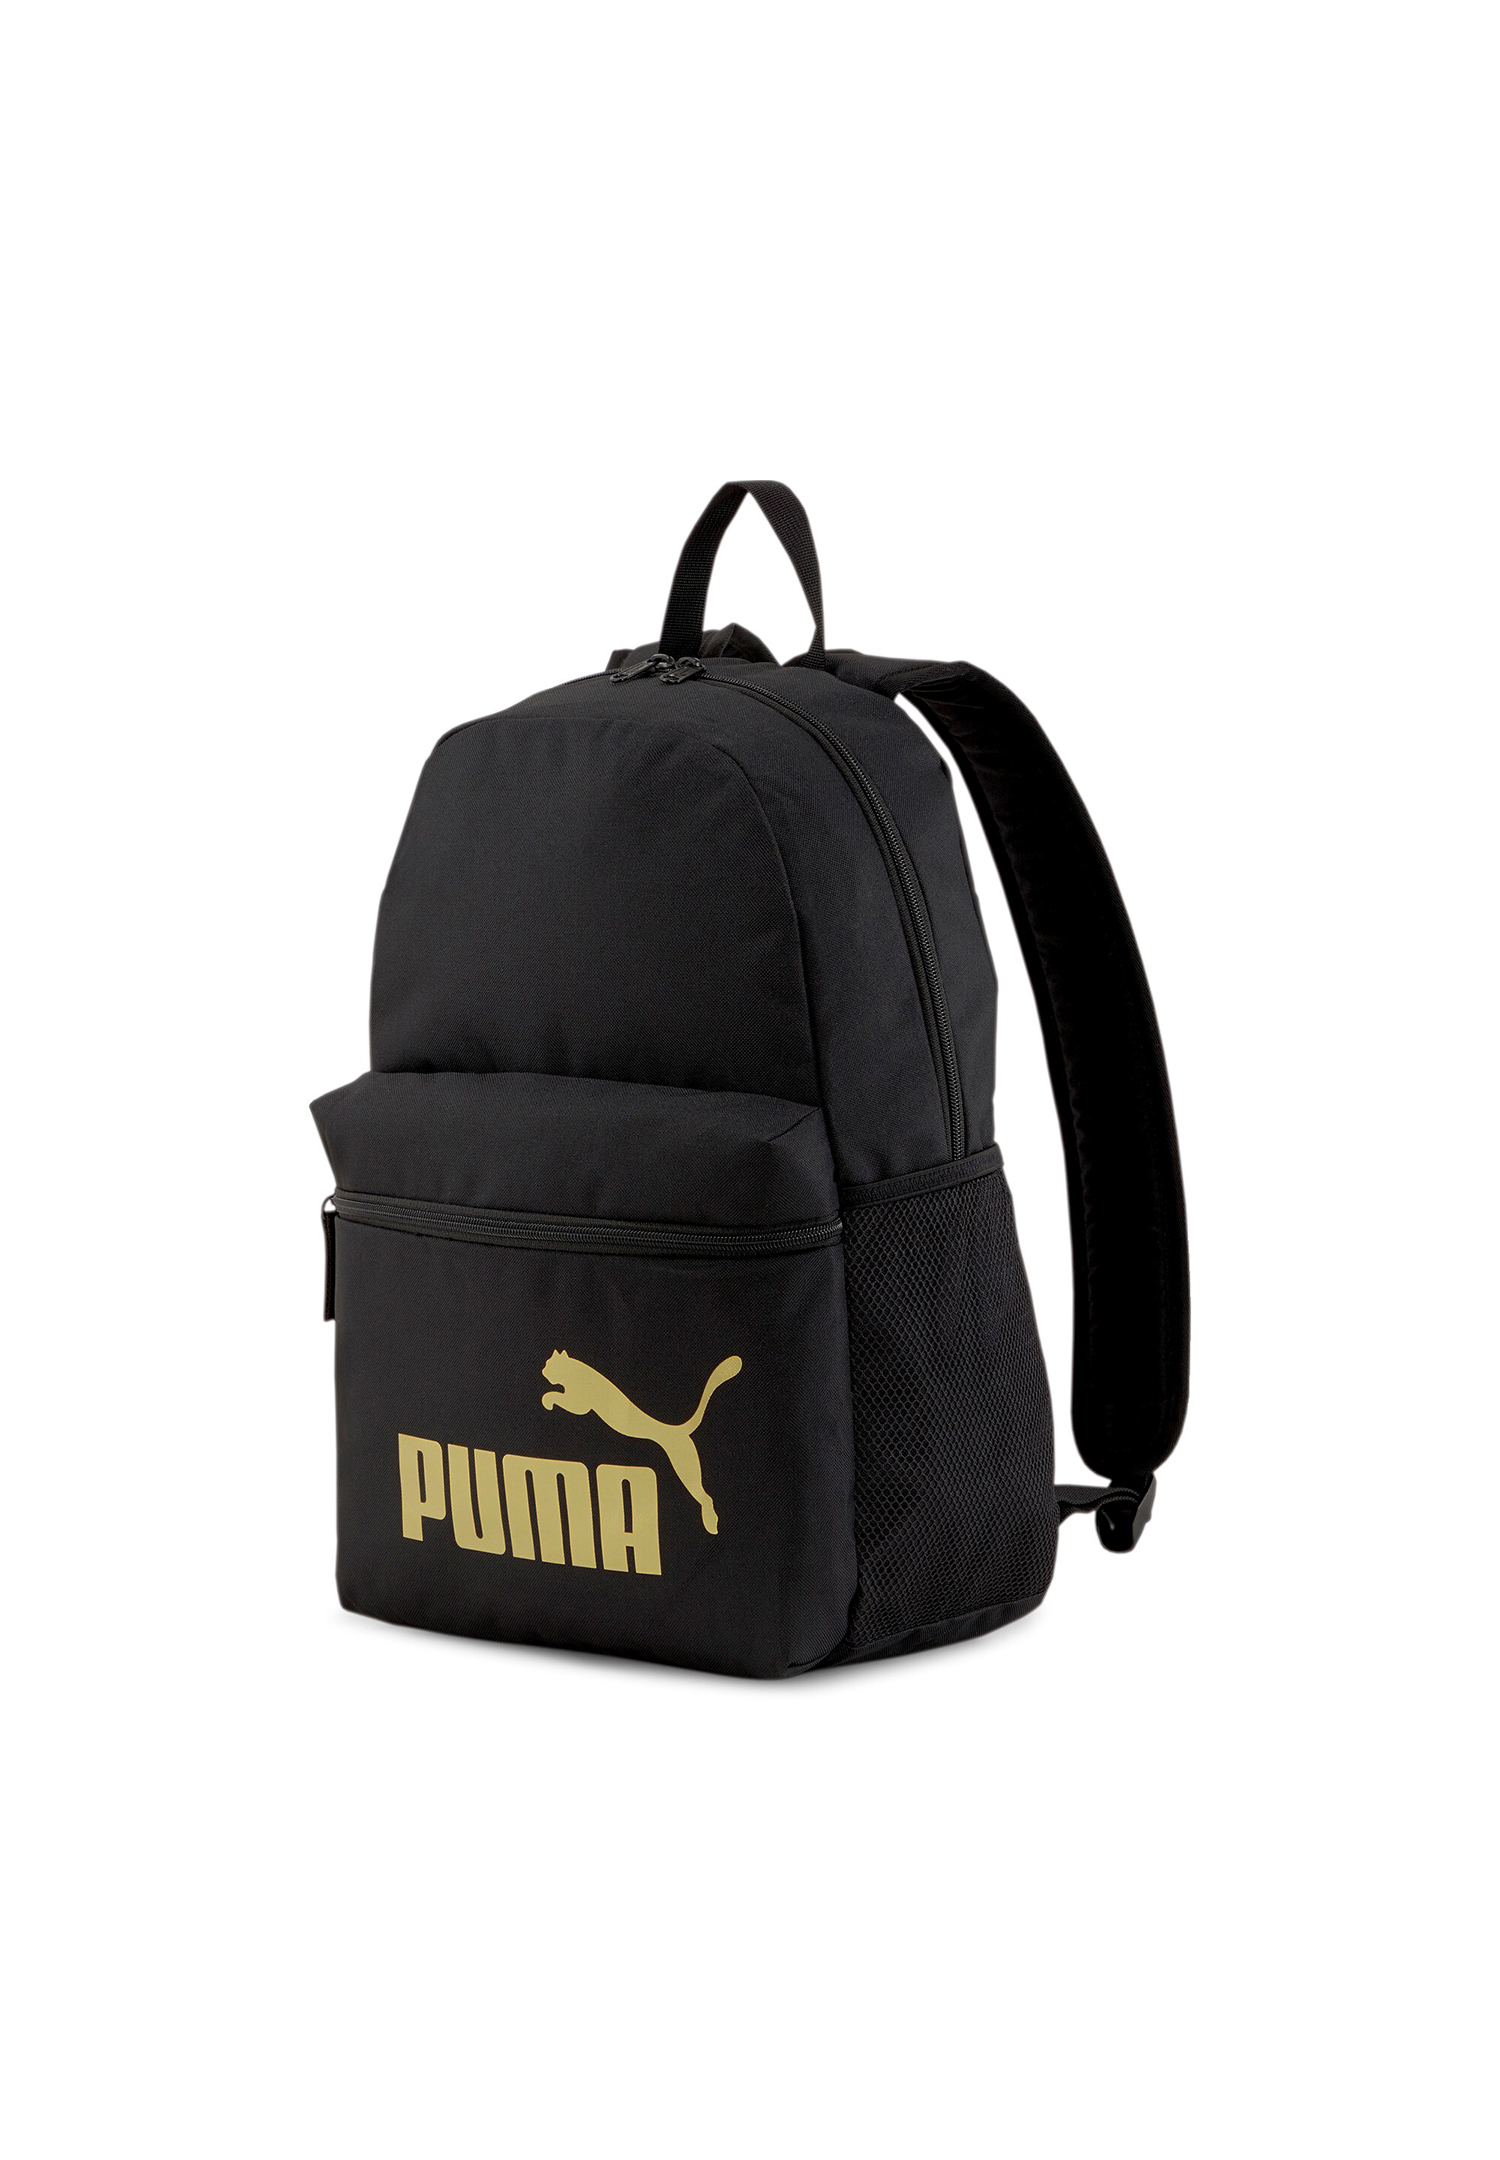 PUMA Phase Backpack Rucksack Sport Freizeit Reise Schule 075487 49 schwarz